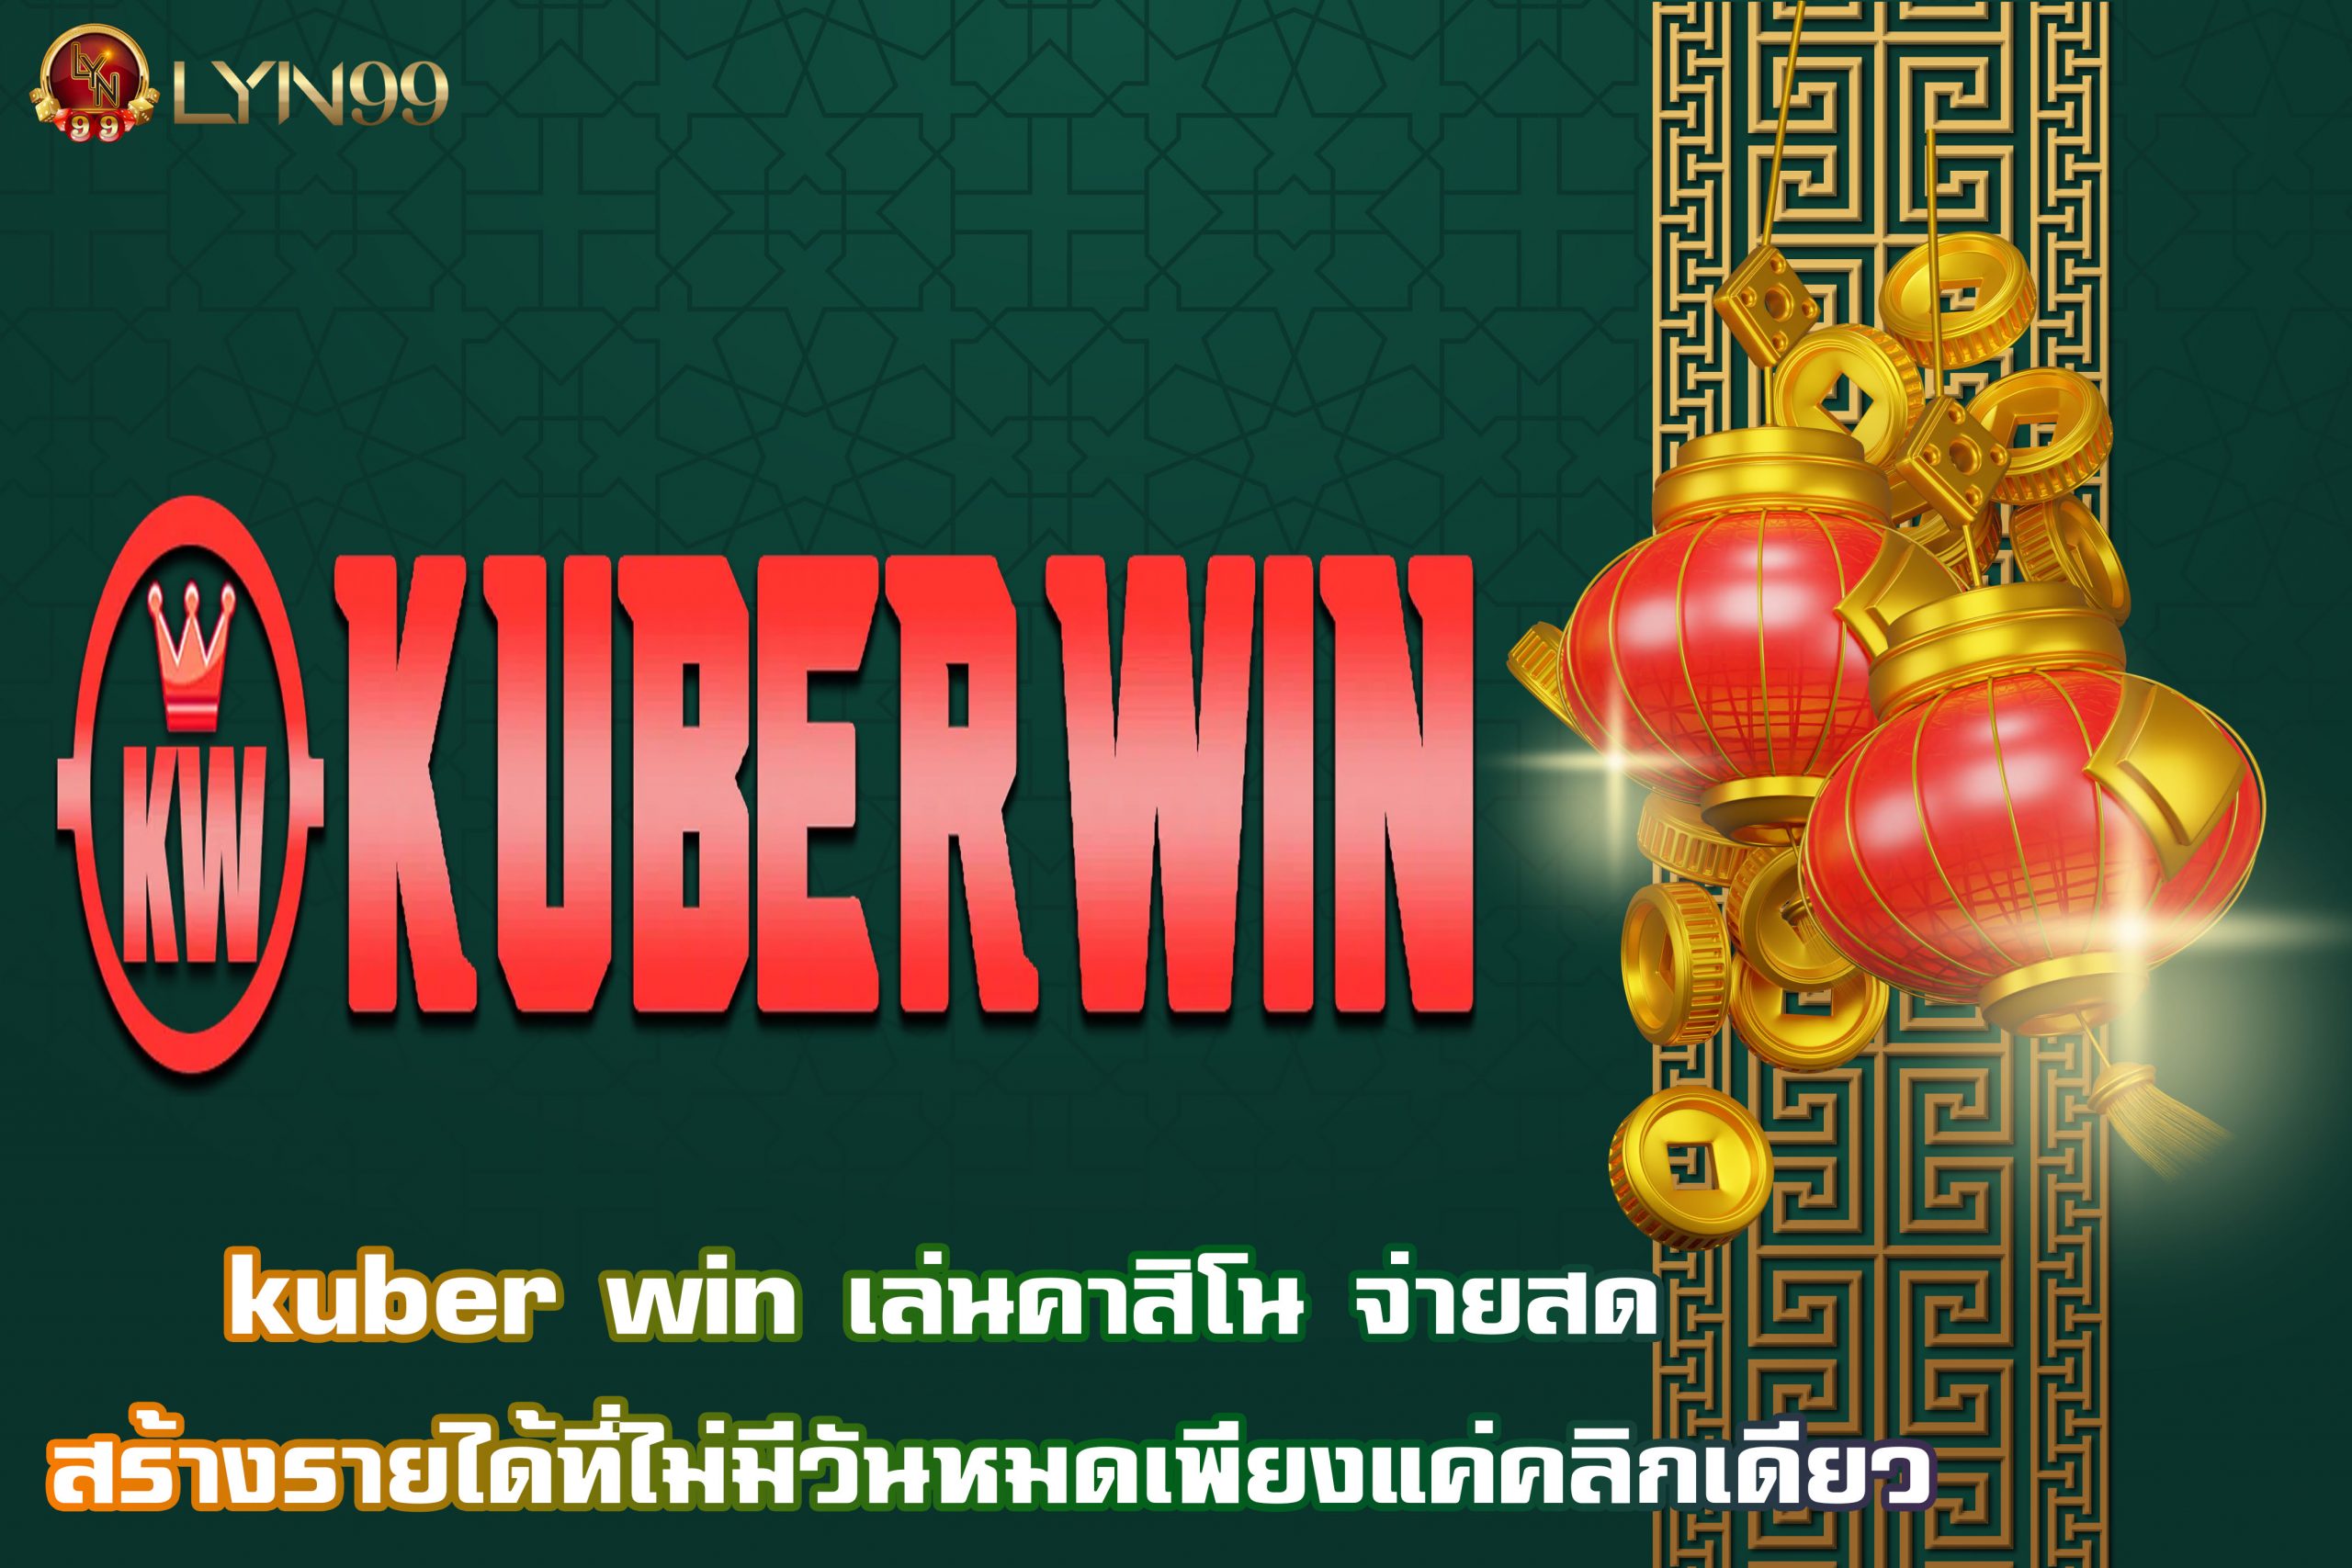 kuber win